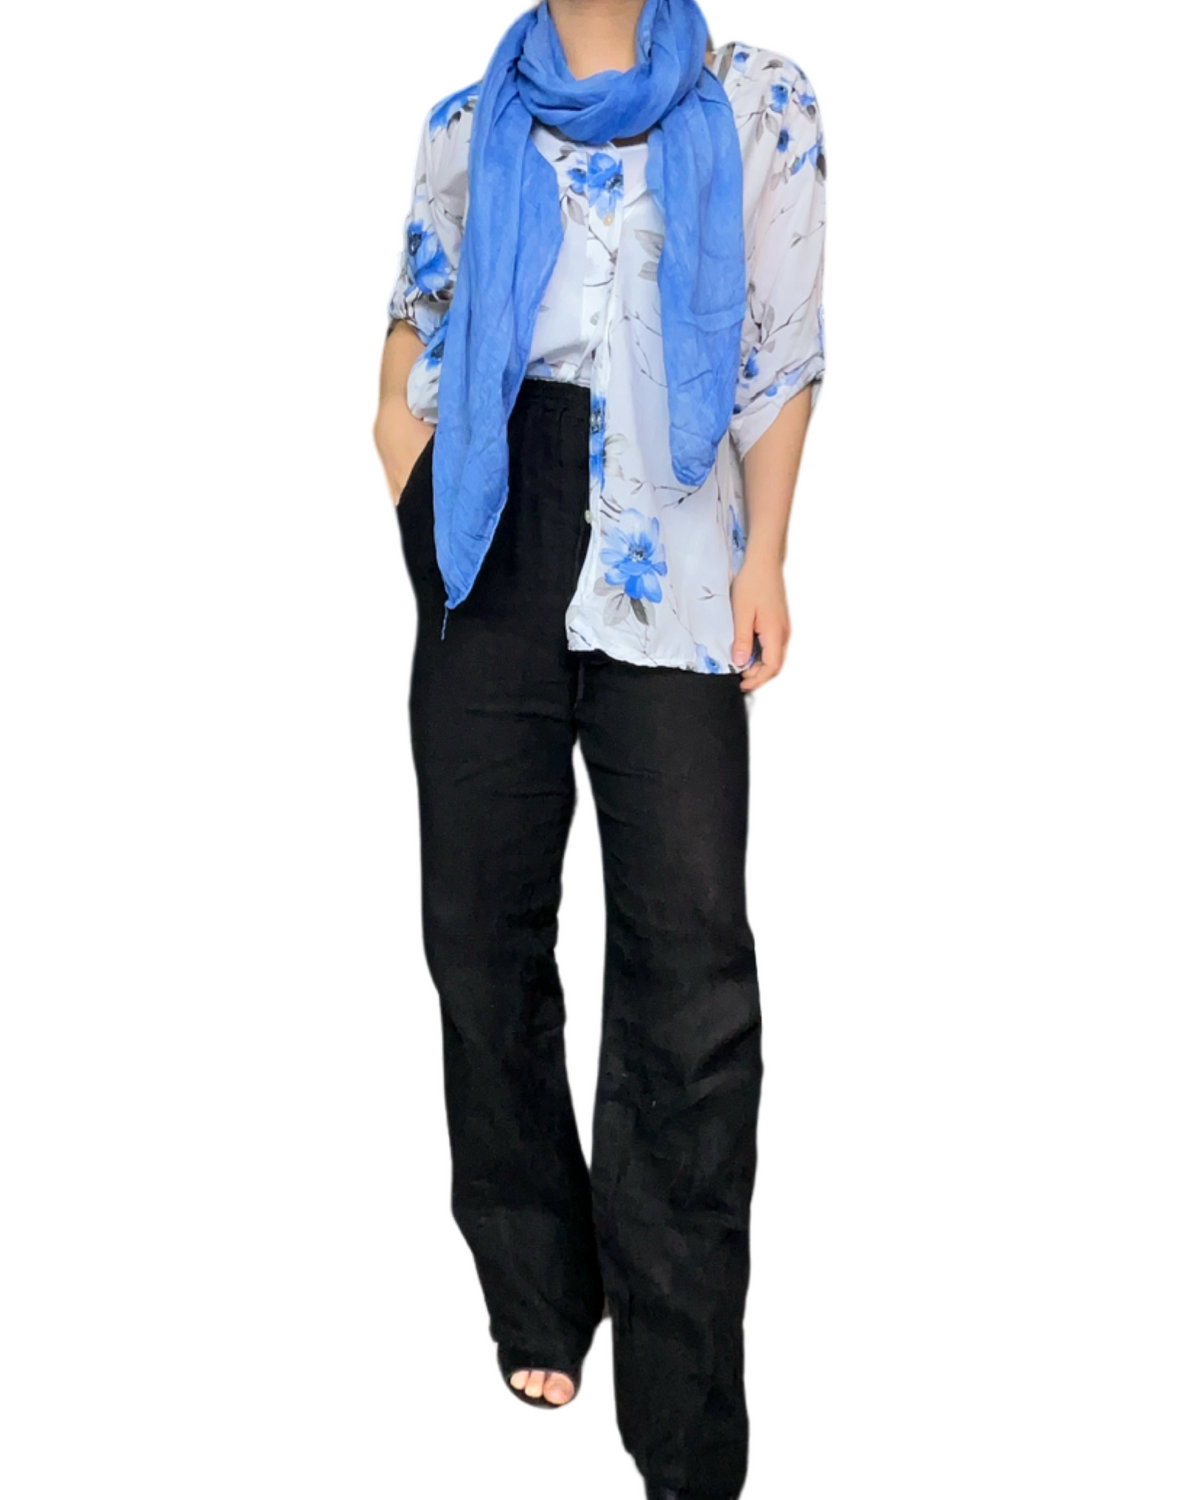 Pantalon droit noir pour femme en lin à taille élastique avec cordon avec chemise et foulard bleu royal.